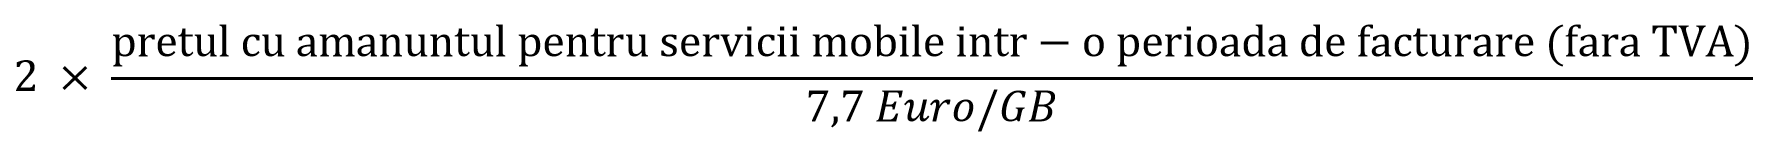 2(pretul cu amanuntul pentru servicii mobile intr-o perioada de facturare (fara TVA) : 7.7 Euro)